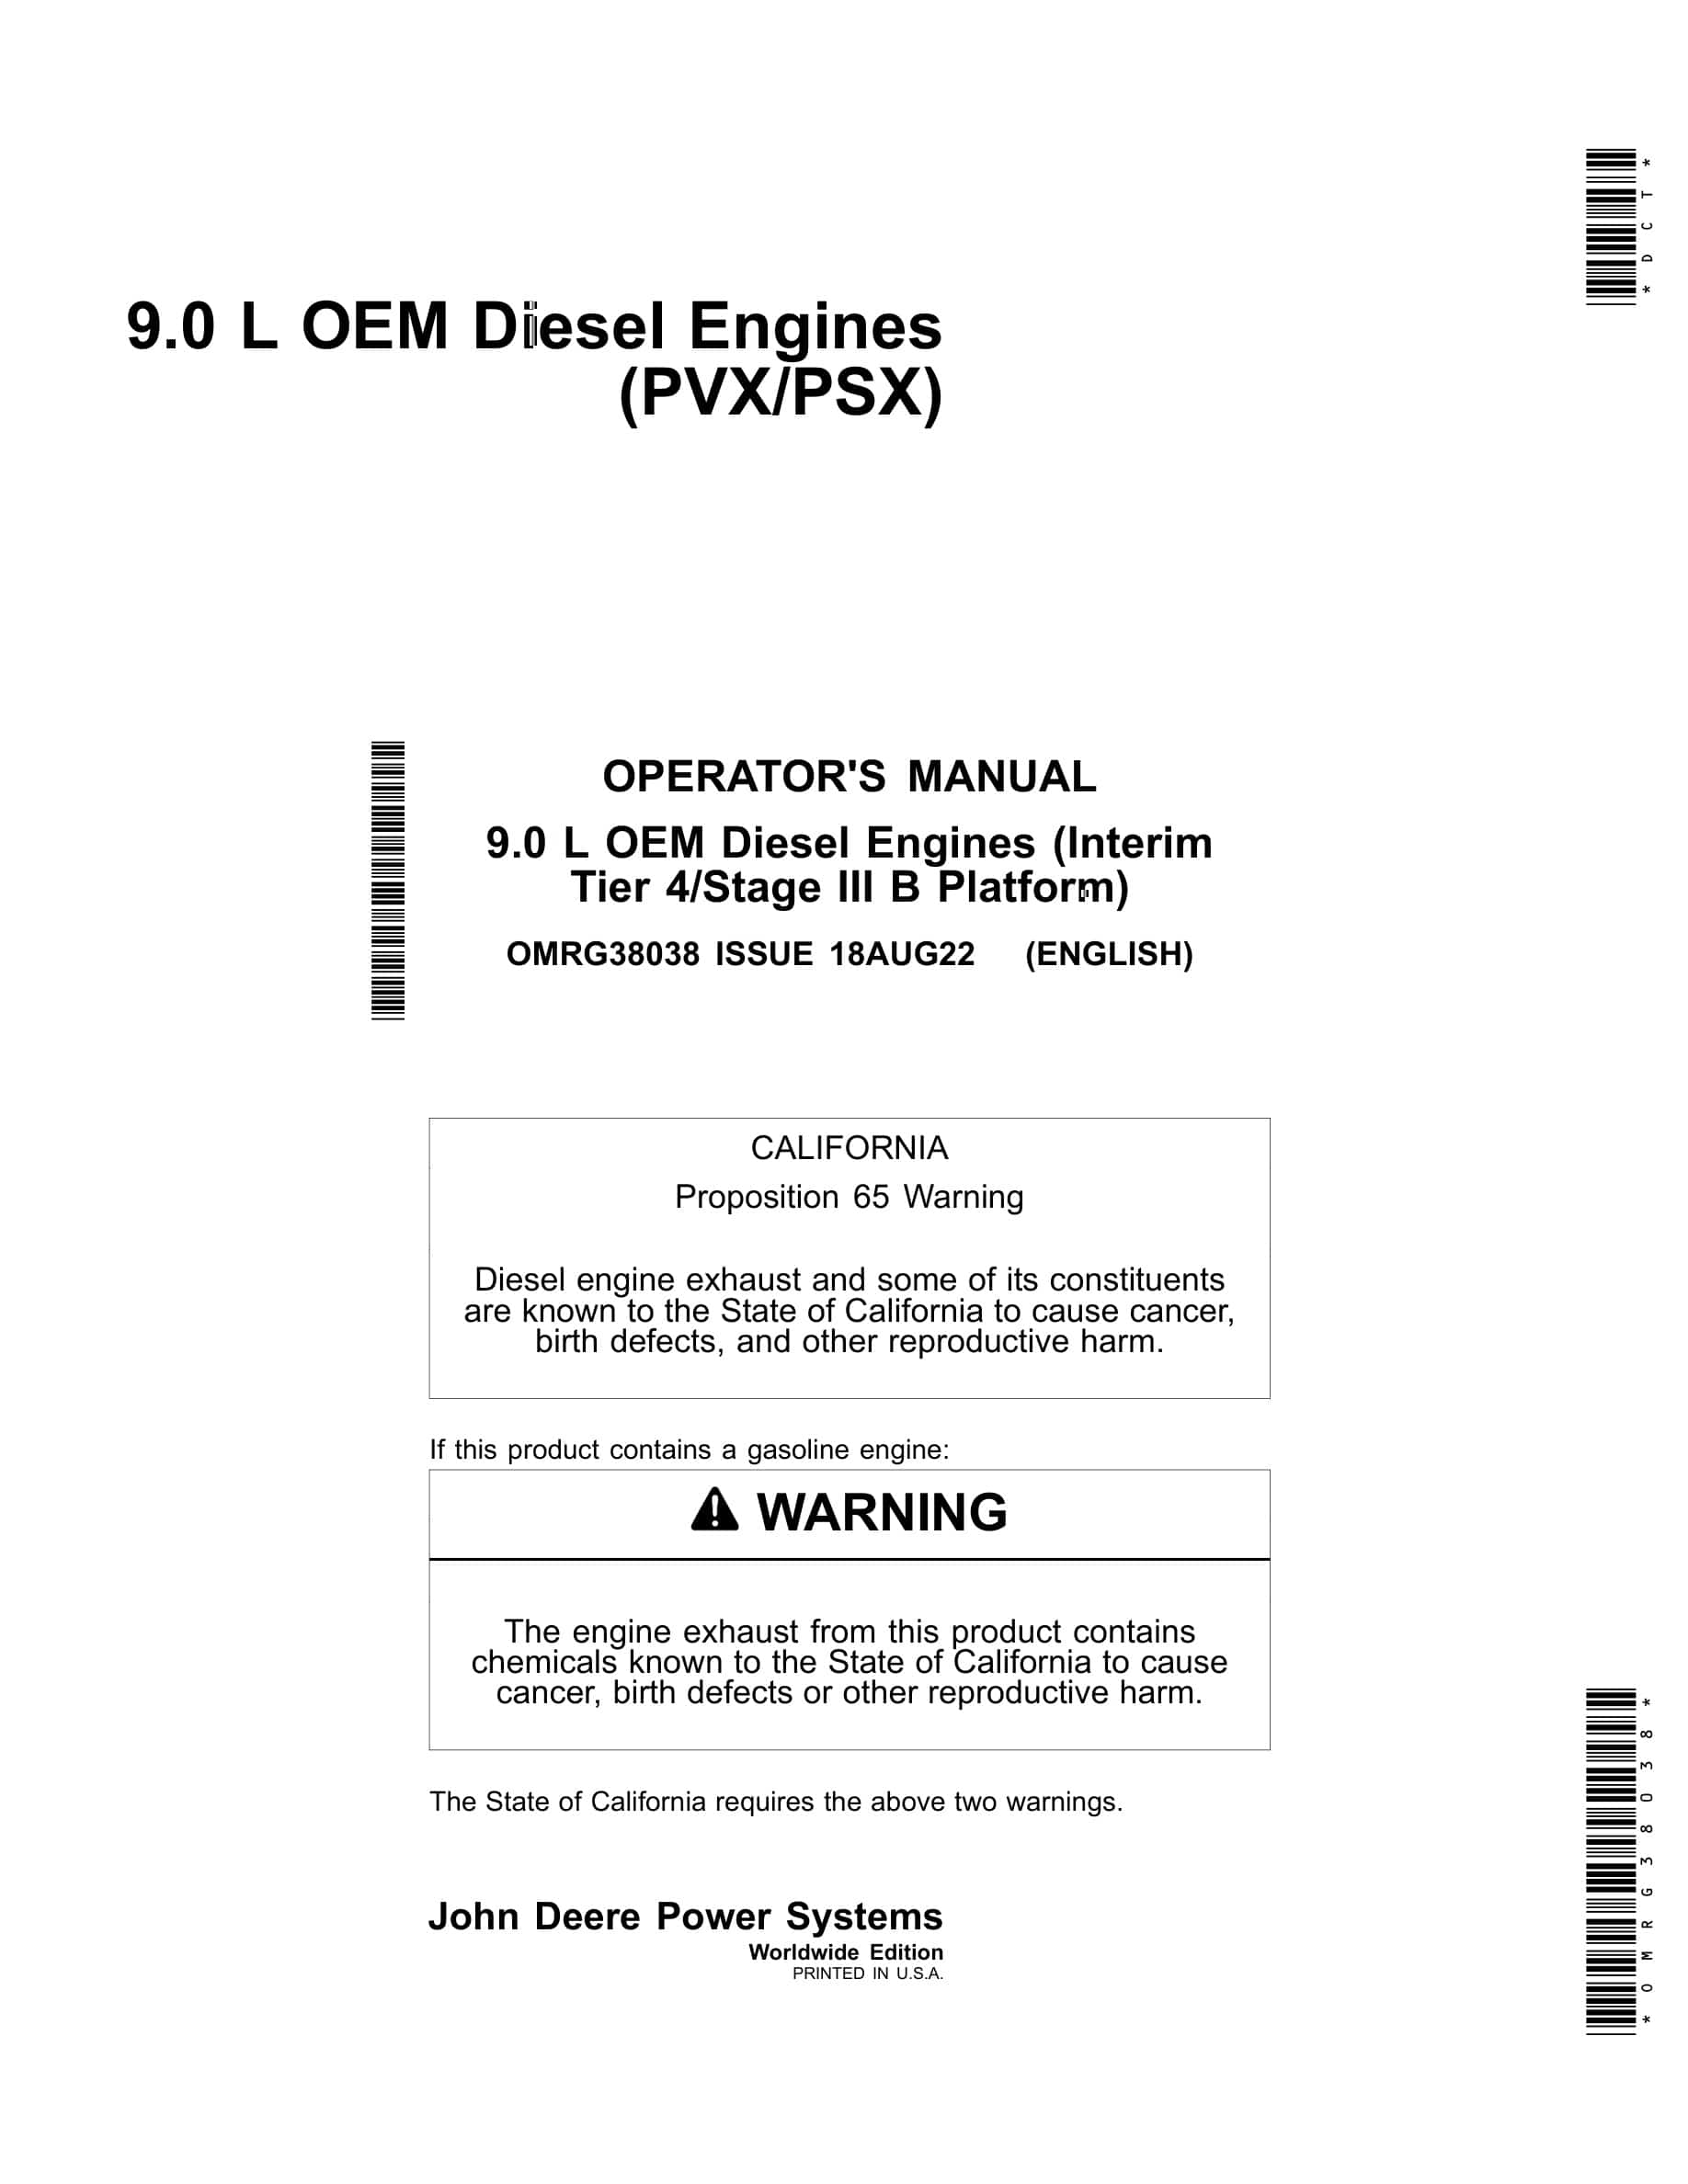 John Deere PowerTech 9.0 L OEM (Interim Tier 4 Stage III B Platform) Diesel Engines Operator Manual OMRG38038-1